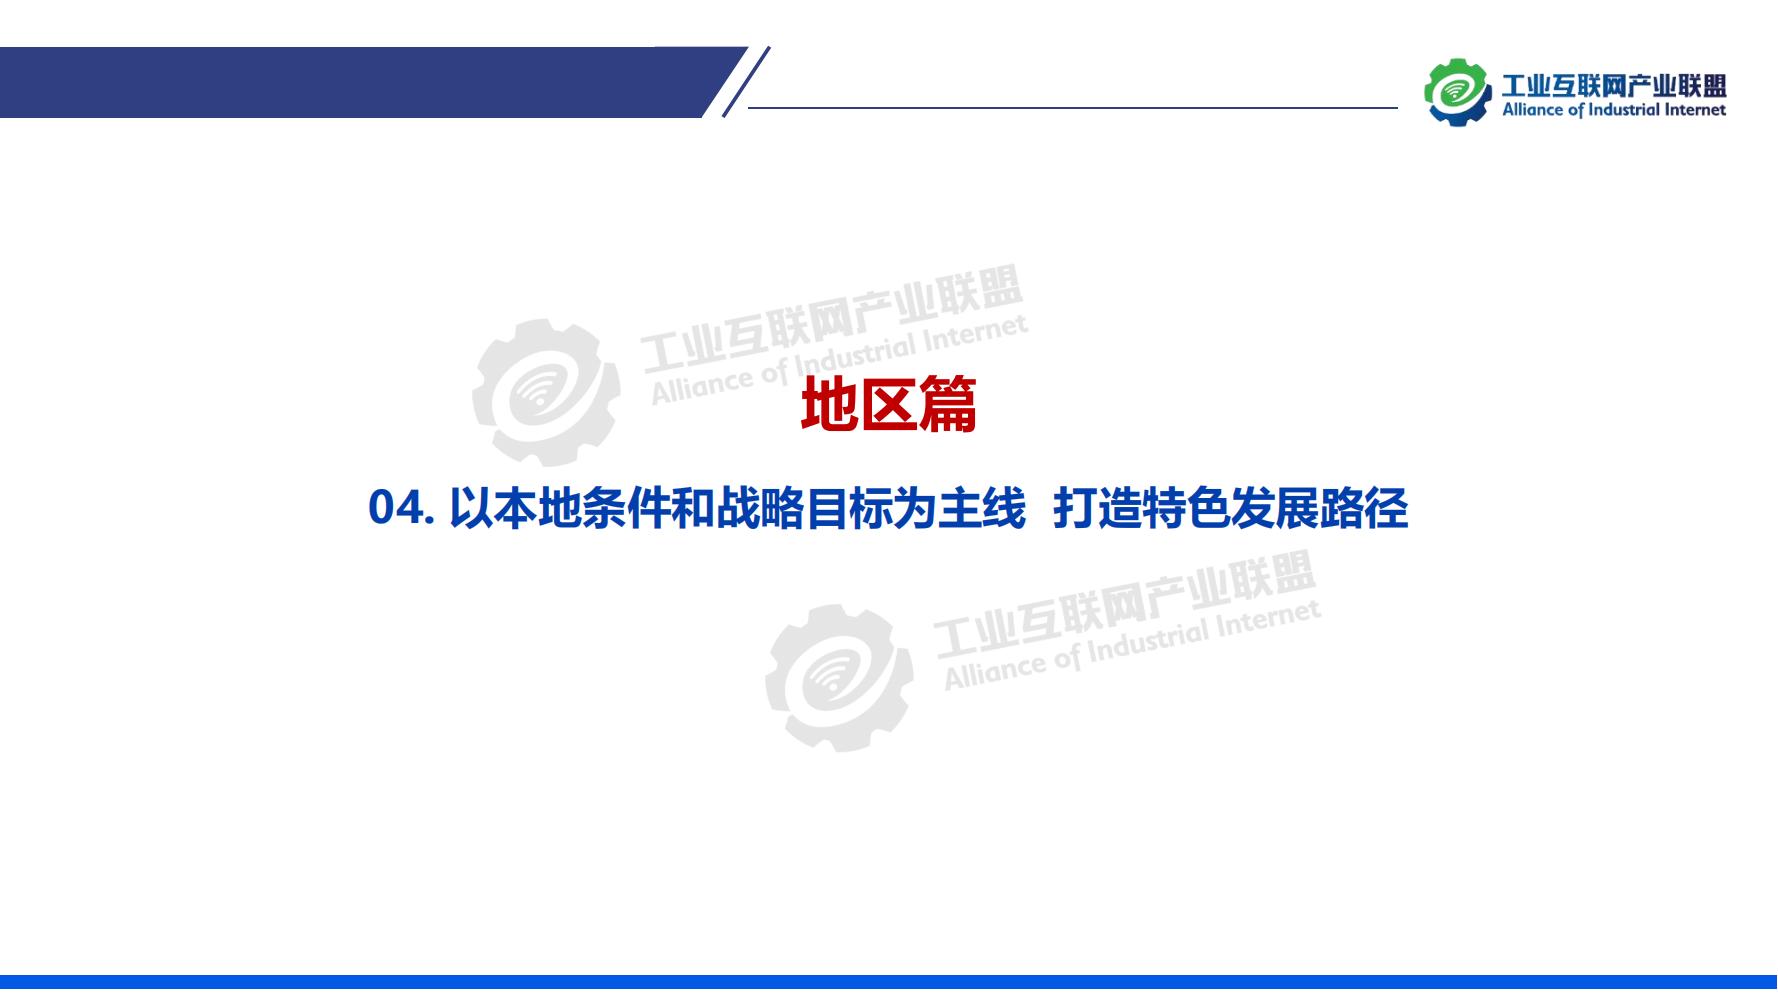 1-中国工业互联网发展成效评估报告-水印_23.jpg